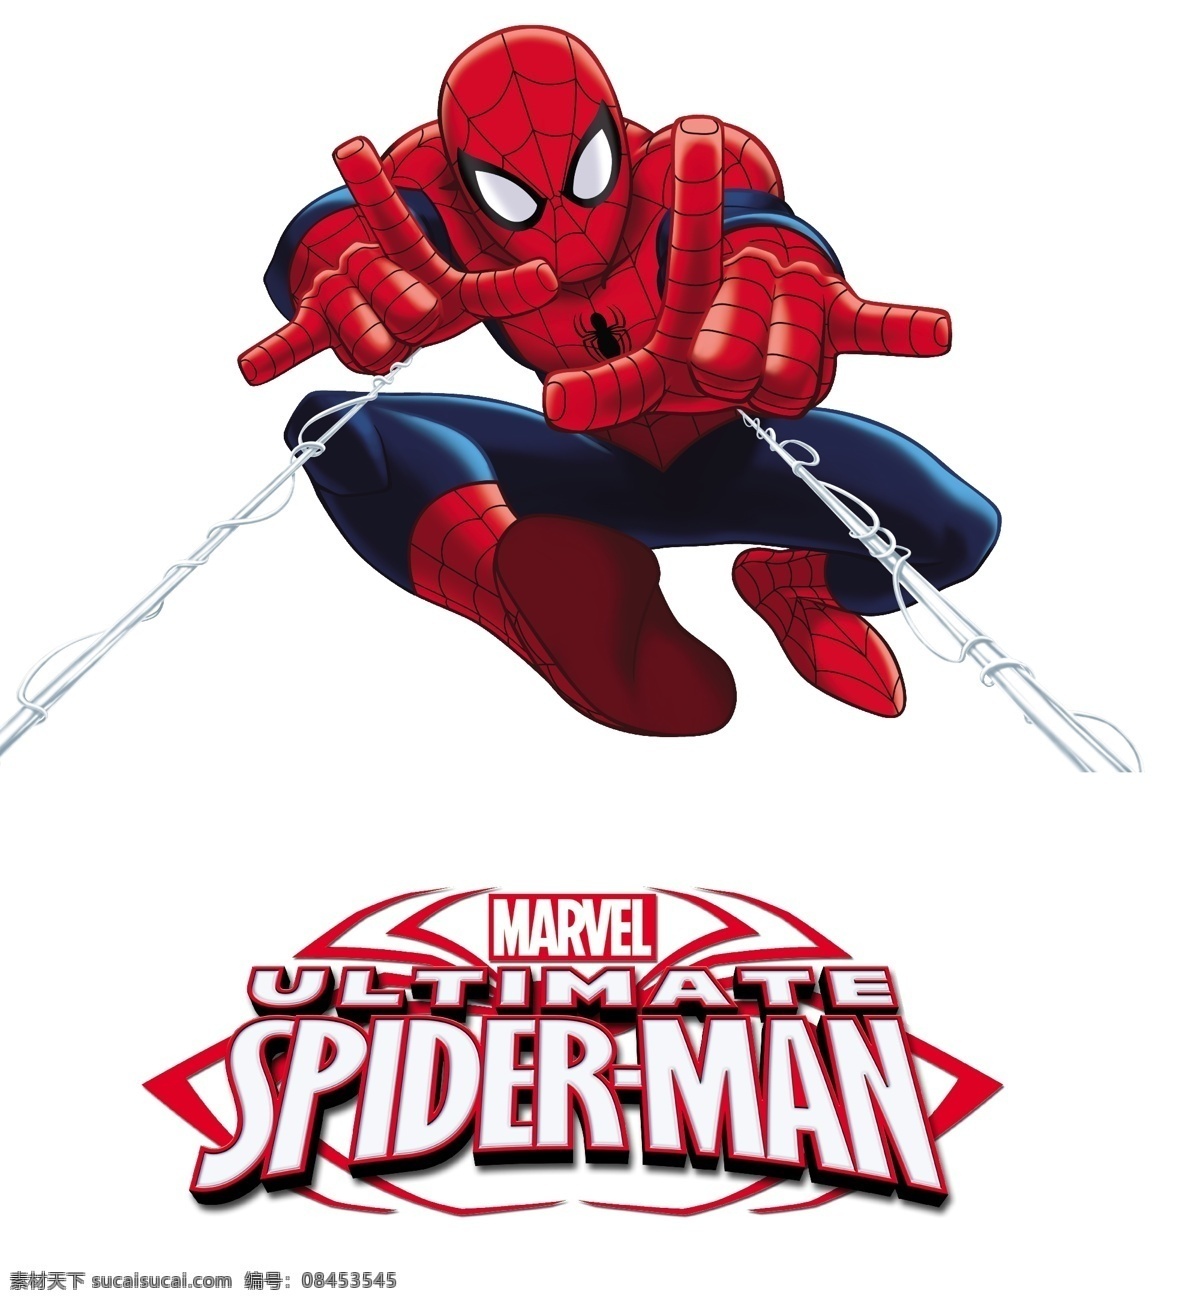 蜘蛛人 spider man 迪斯尼 spiderman disney 卡通 系列 动漫动画 动漫人物